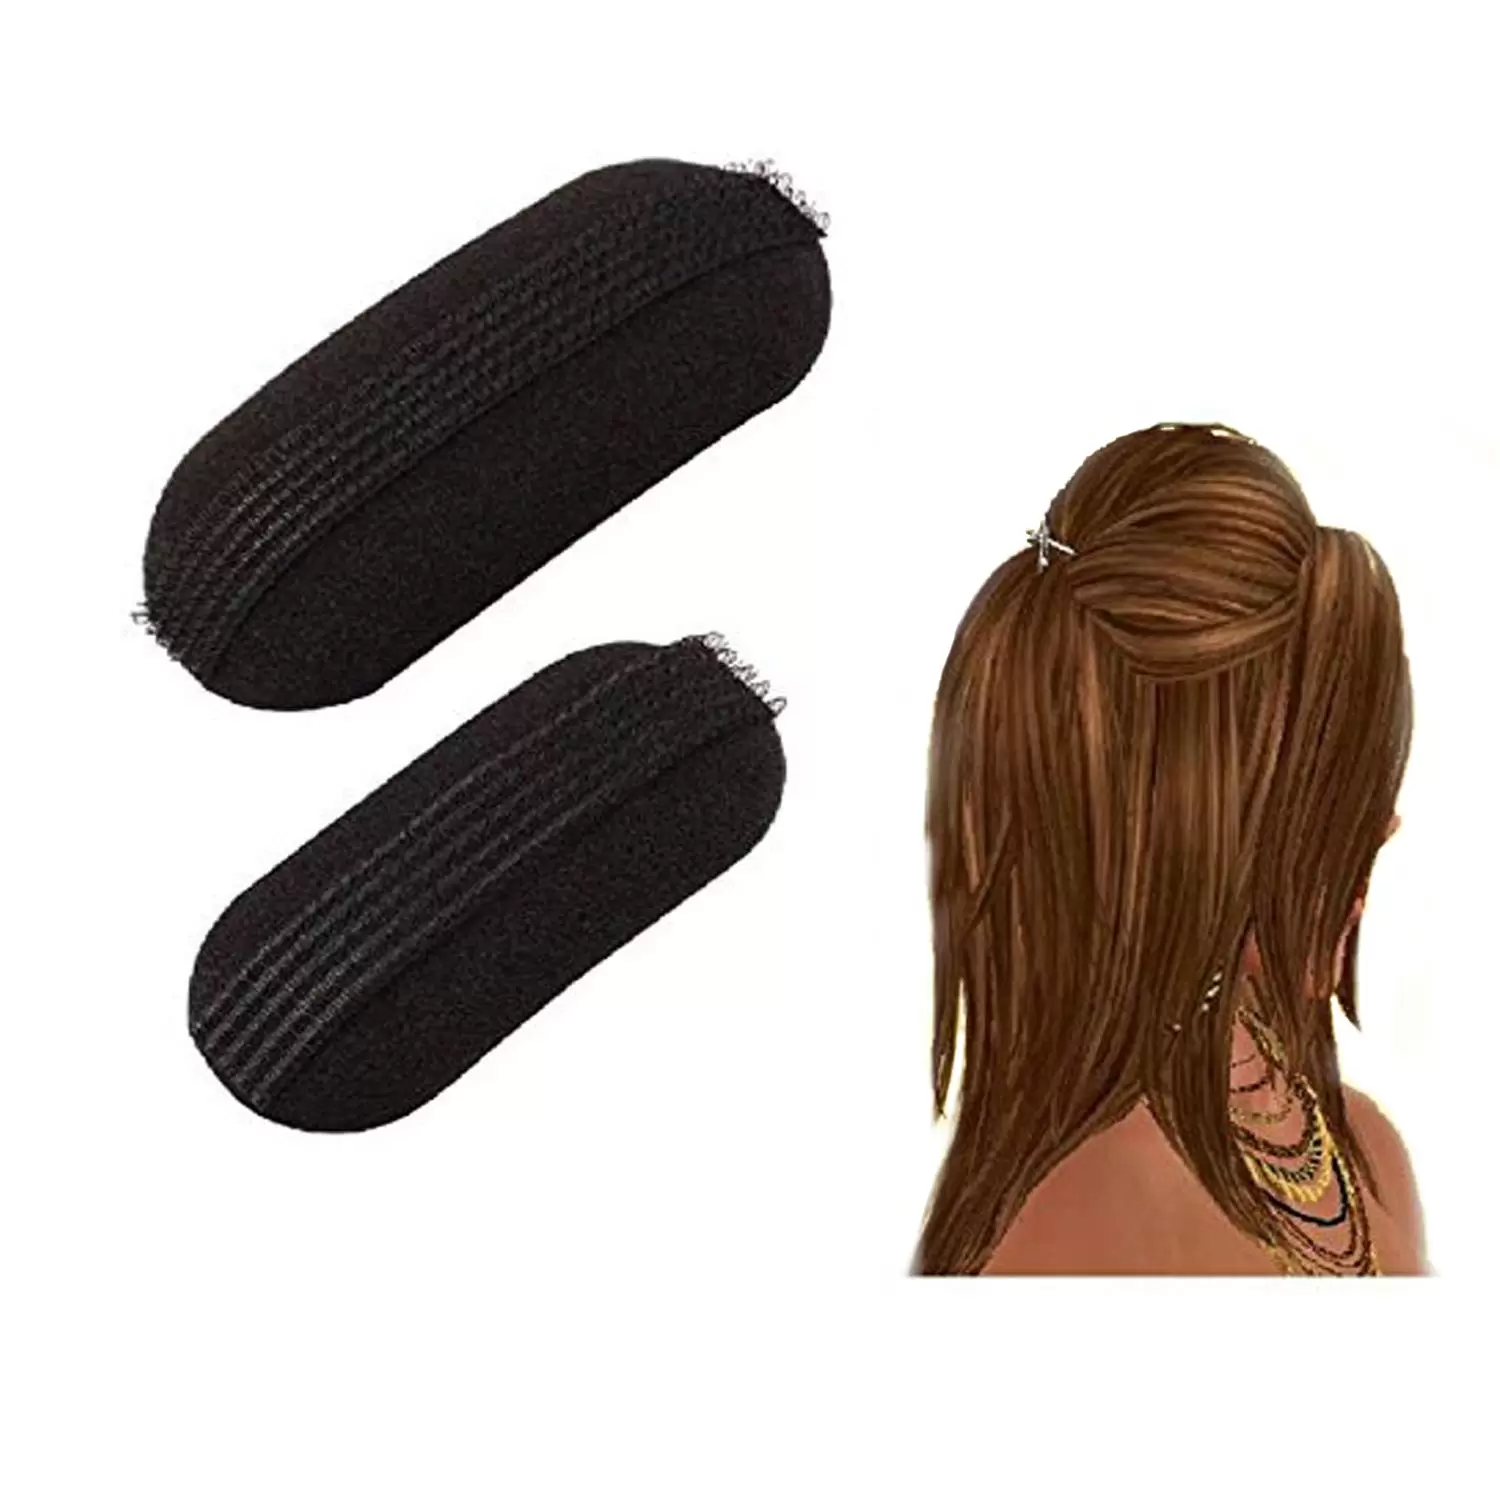 Sams Hair Accessories Tictac Hair Puff Maker Hair Volumizer Tool - Sams  Collection